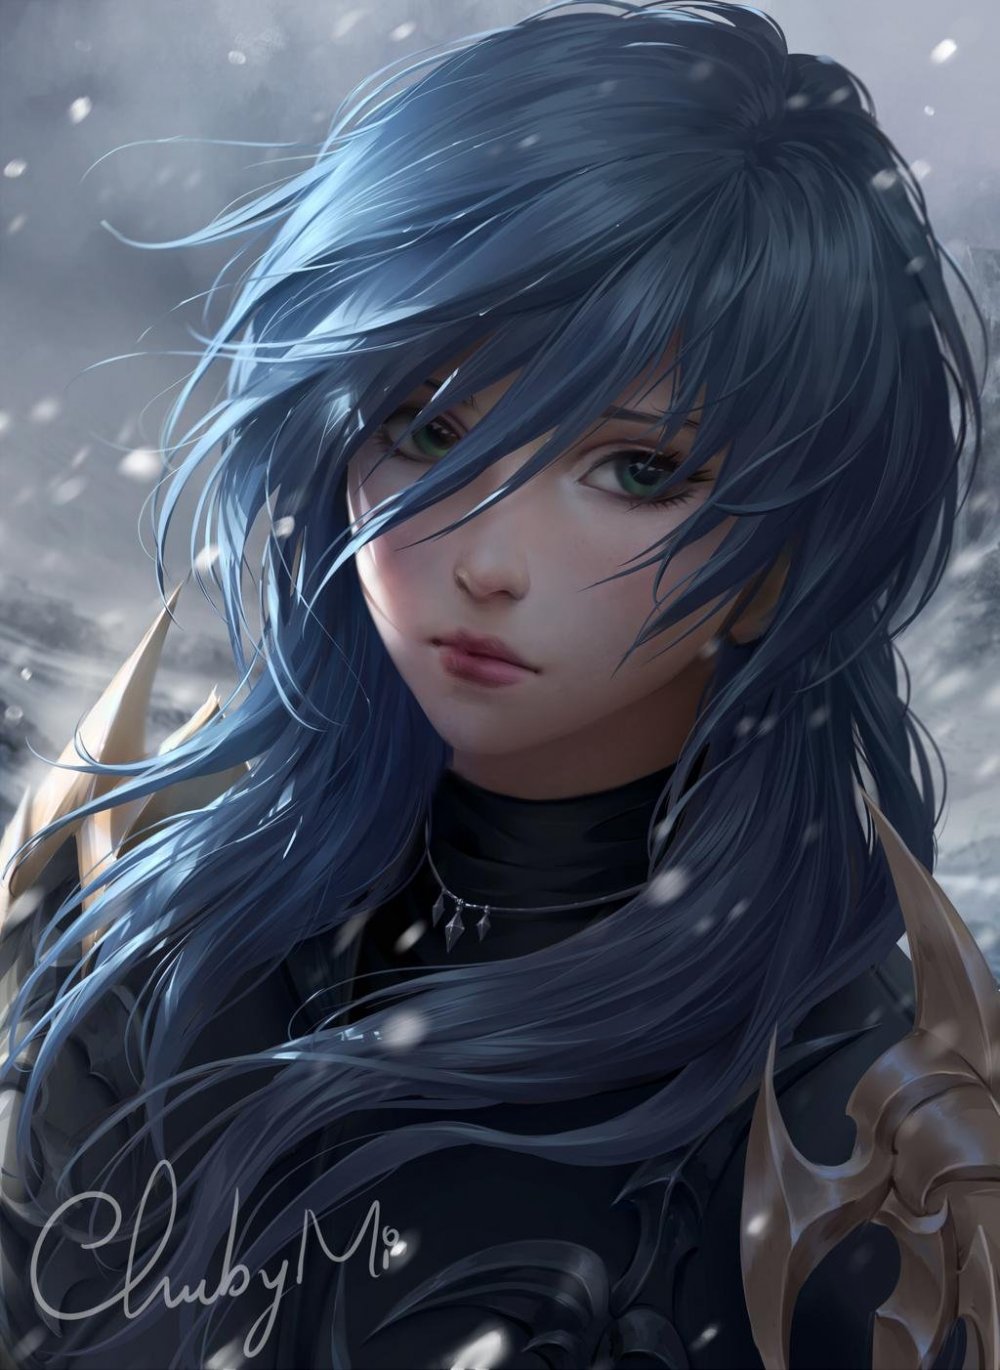 Аниме девушка с синими волосами